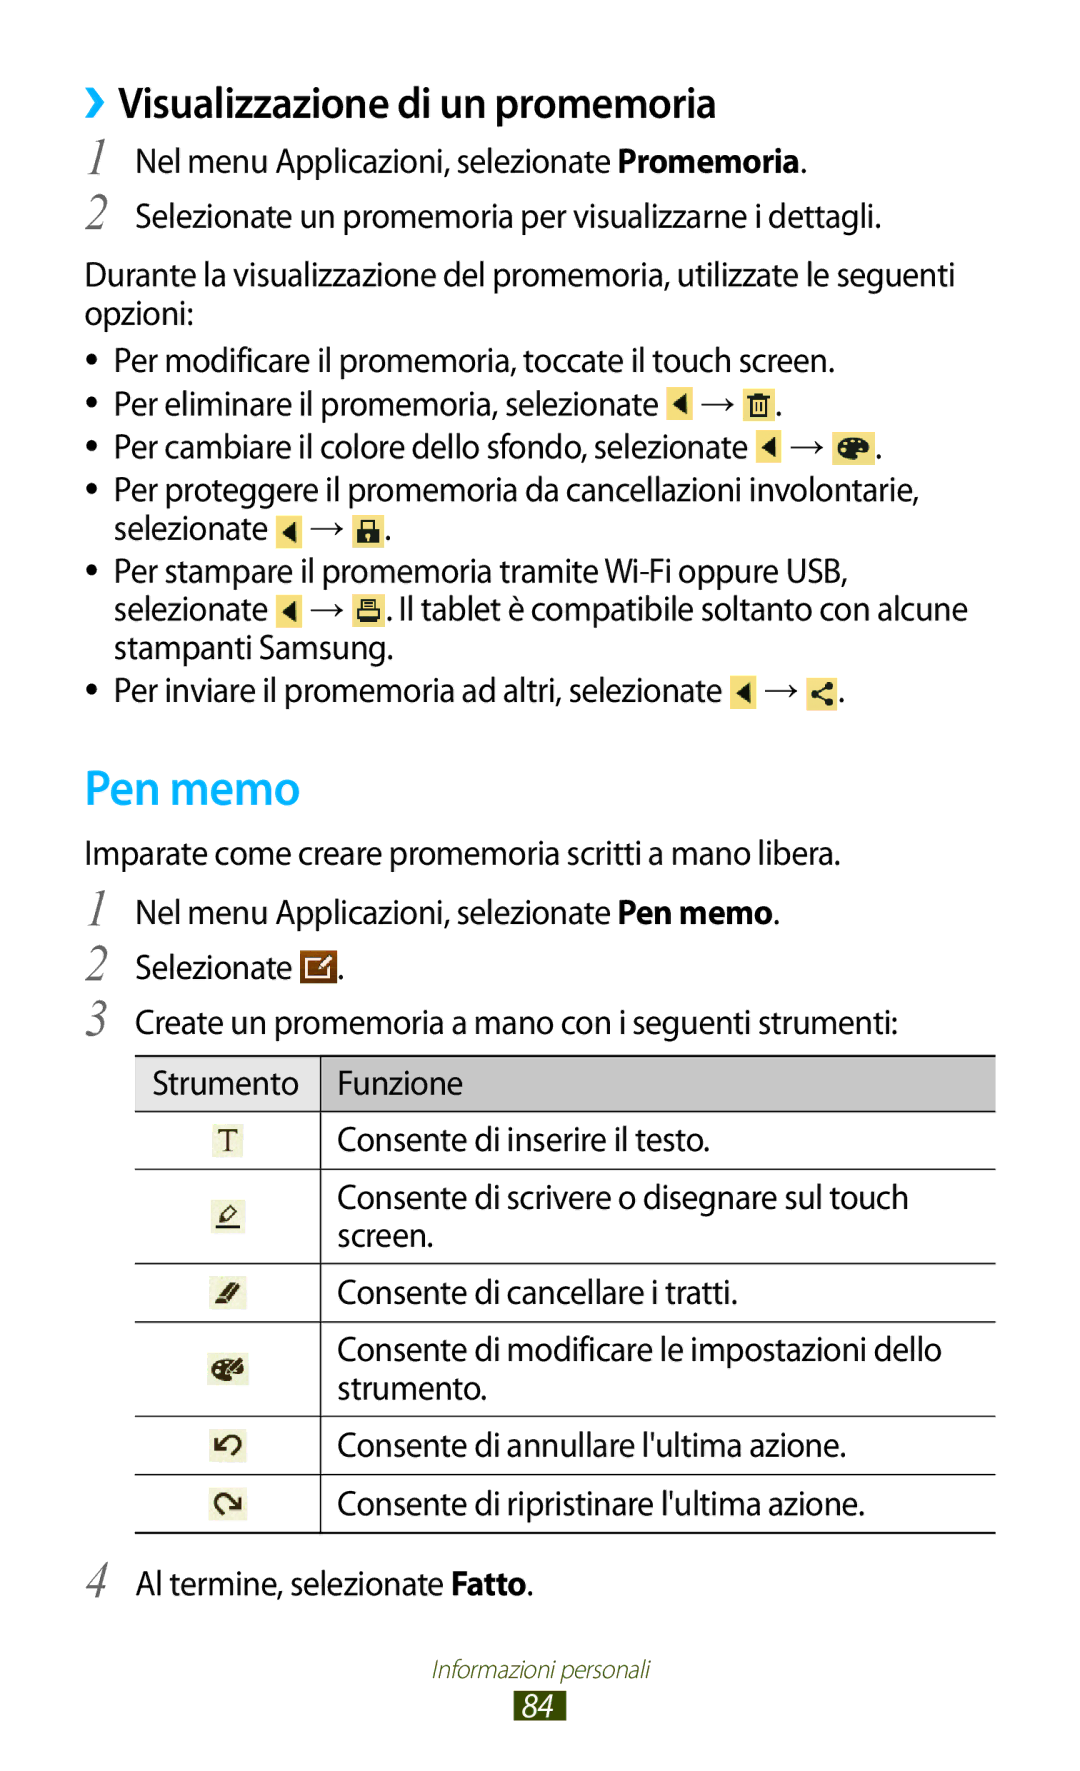 Samsung GT-P7500UWDOMN, GT-P7500FKDOMN, GT-P7500UWDHUI manual Pen memo, ››Visualizzazione di un promemoria, Stampanti Samsung 